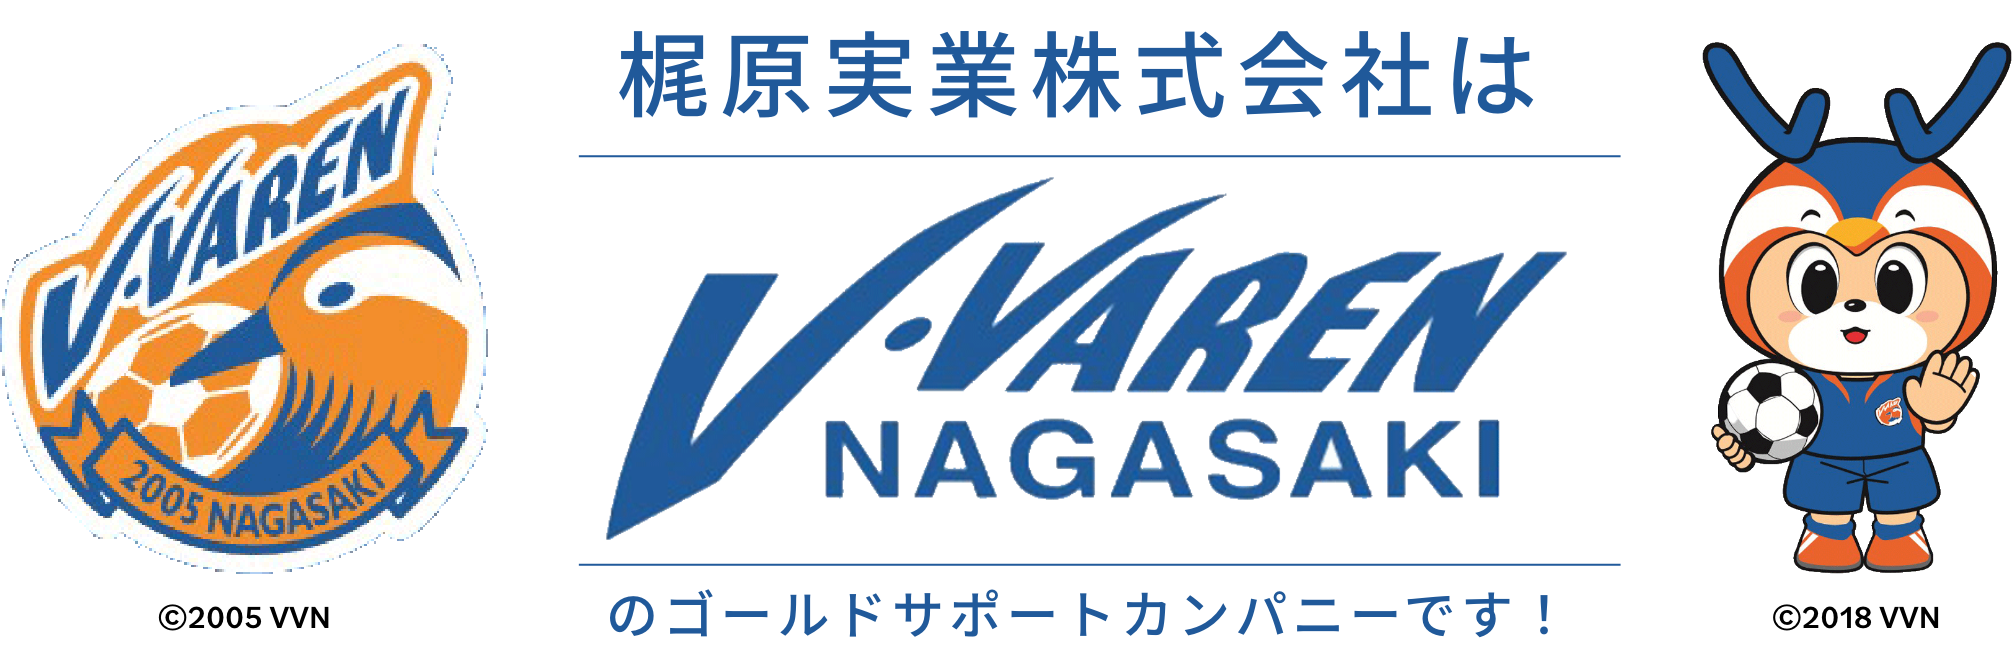 V-VAREN NAGASAKI のゴールドサポートカンパニーです！